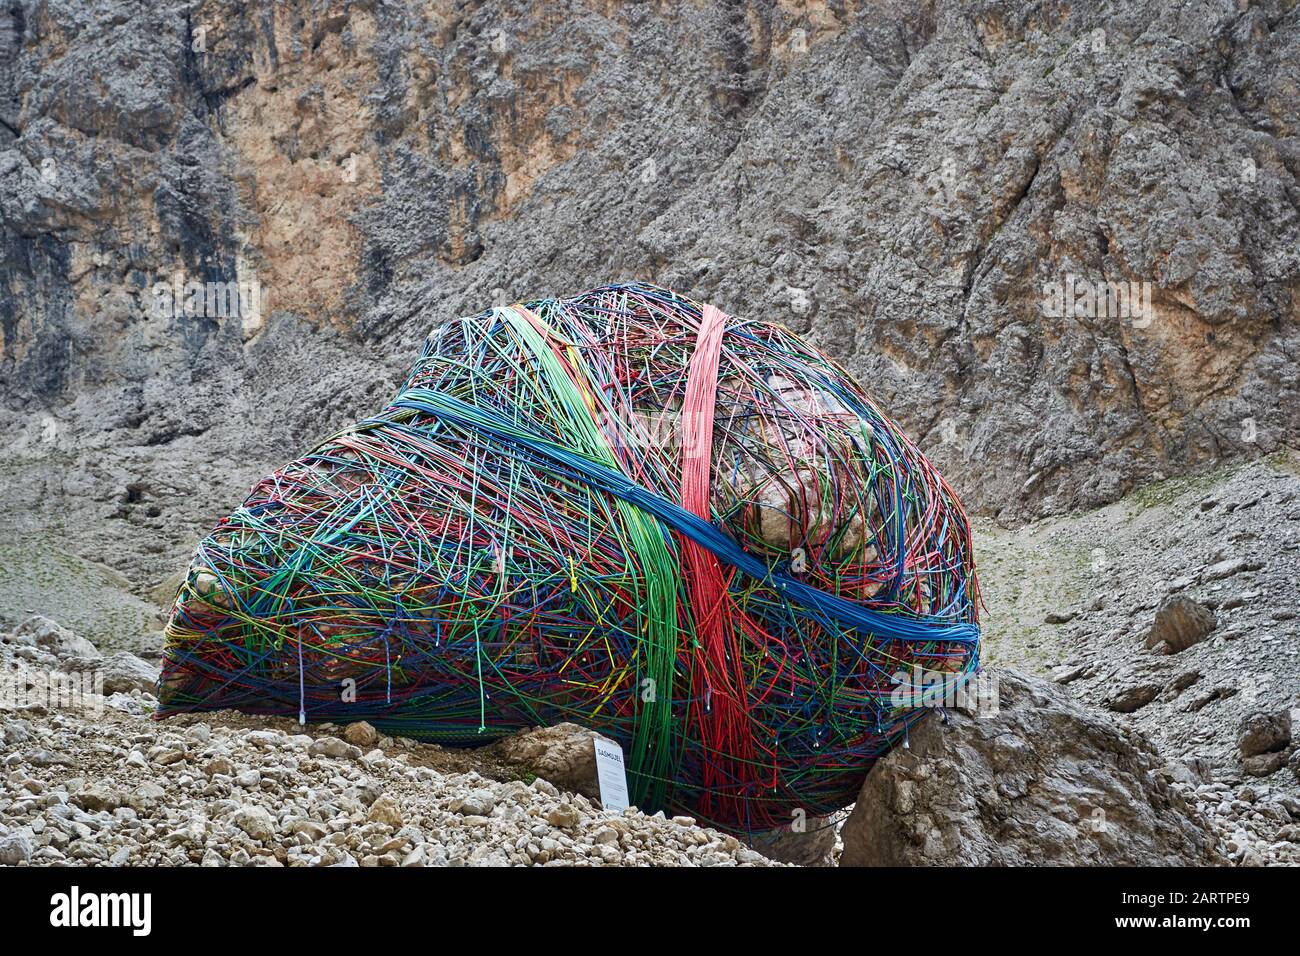 Sassolungo, Italia - 24 agosto 2019: Corde legate intorno ad una roccia, un progetto culturale chiamato Sasmujel, realizzato da Hubert Kostner il luglio 27th 2019 come celebre Foto Stock